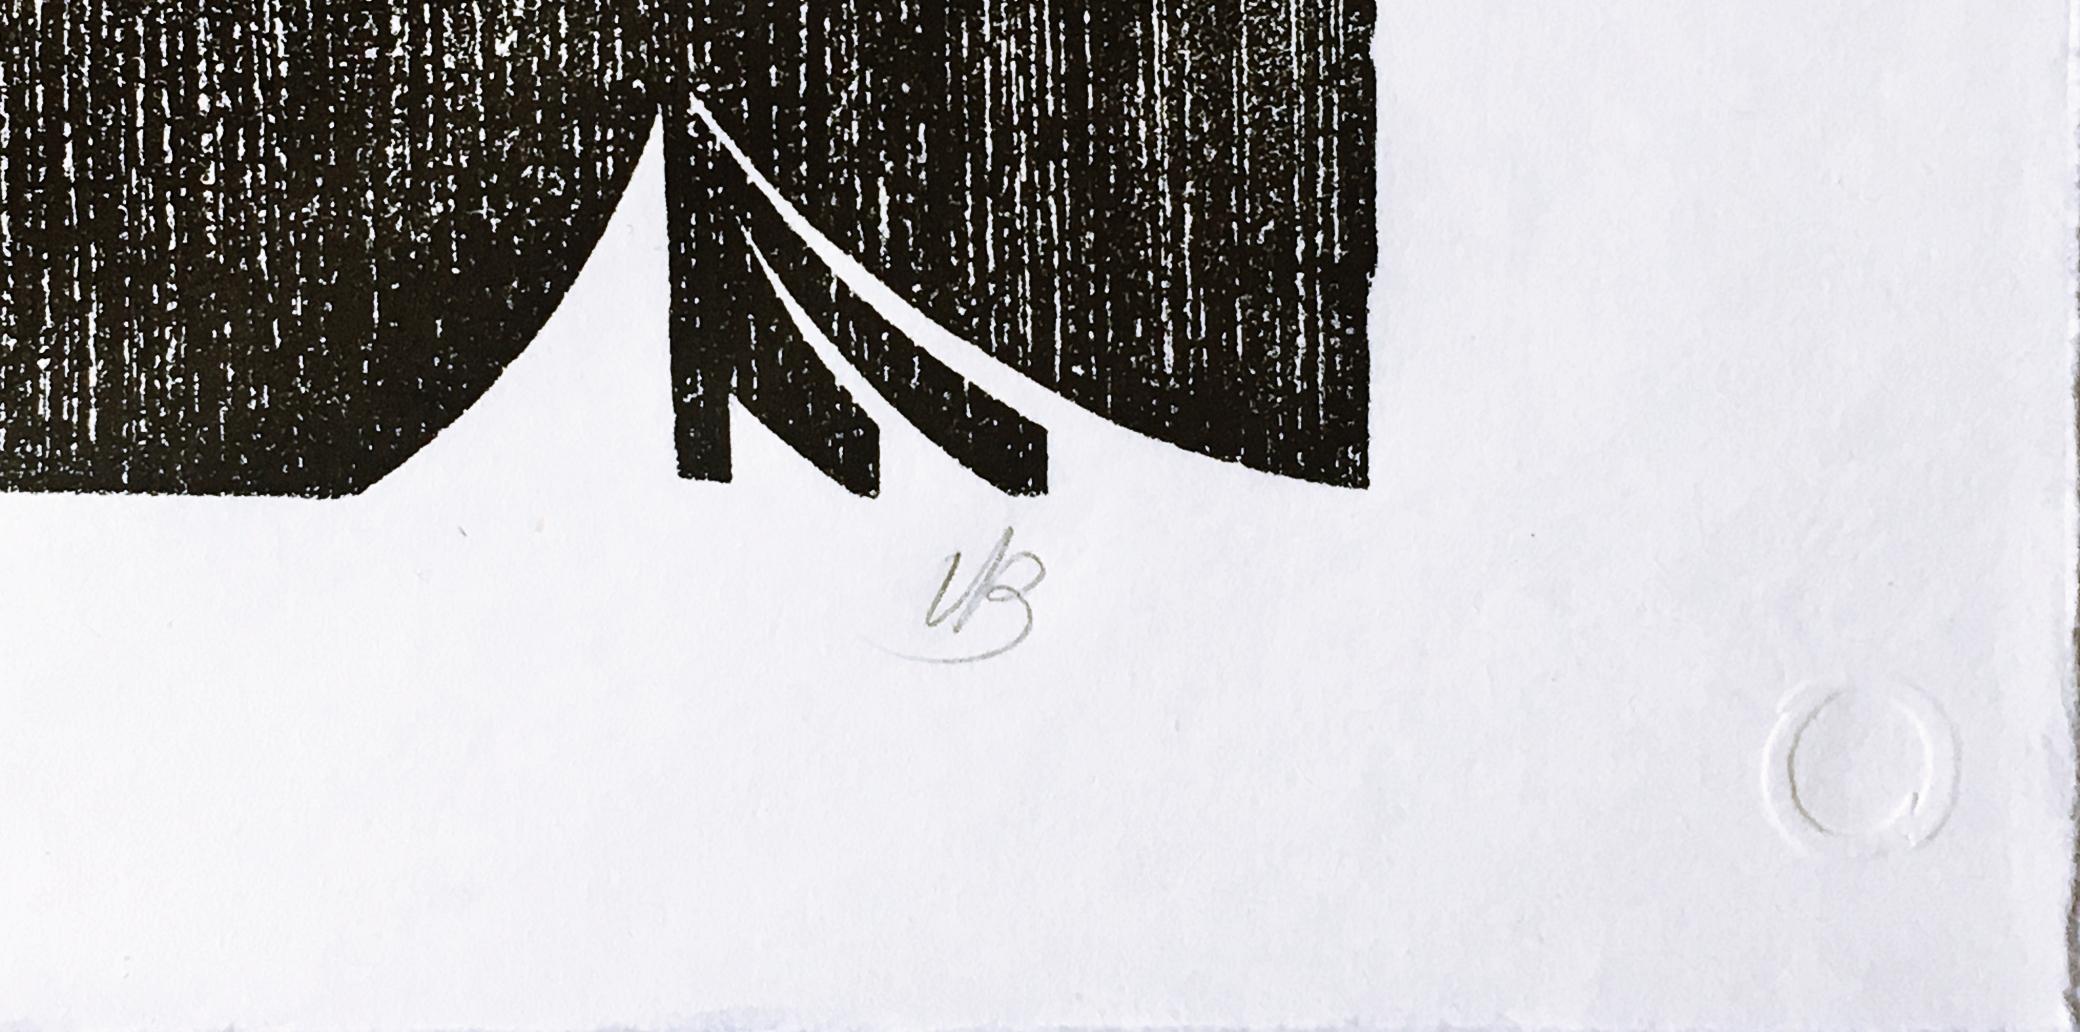 Varujan Boghosian
Ohne Titel, aus dem Portfolio der Long Point Gallery, 1988
Holzschnitt auf Reispapier. Handsigniert. Nummeriert. Blindstempel der Druckerei. 
Rechts unten auf der Vorderseite handsigniert, mit Blindstempel der Druckerei und